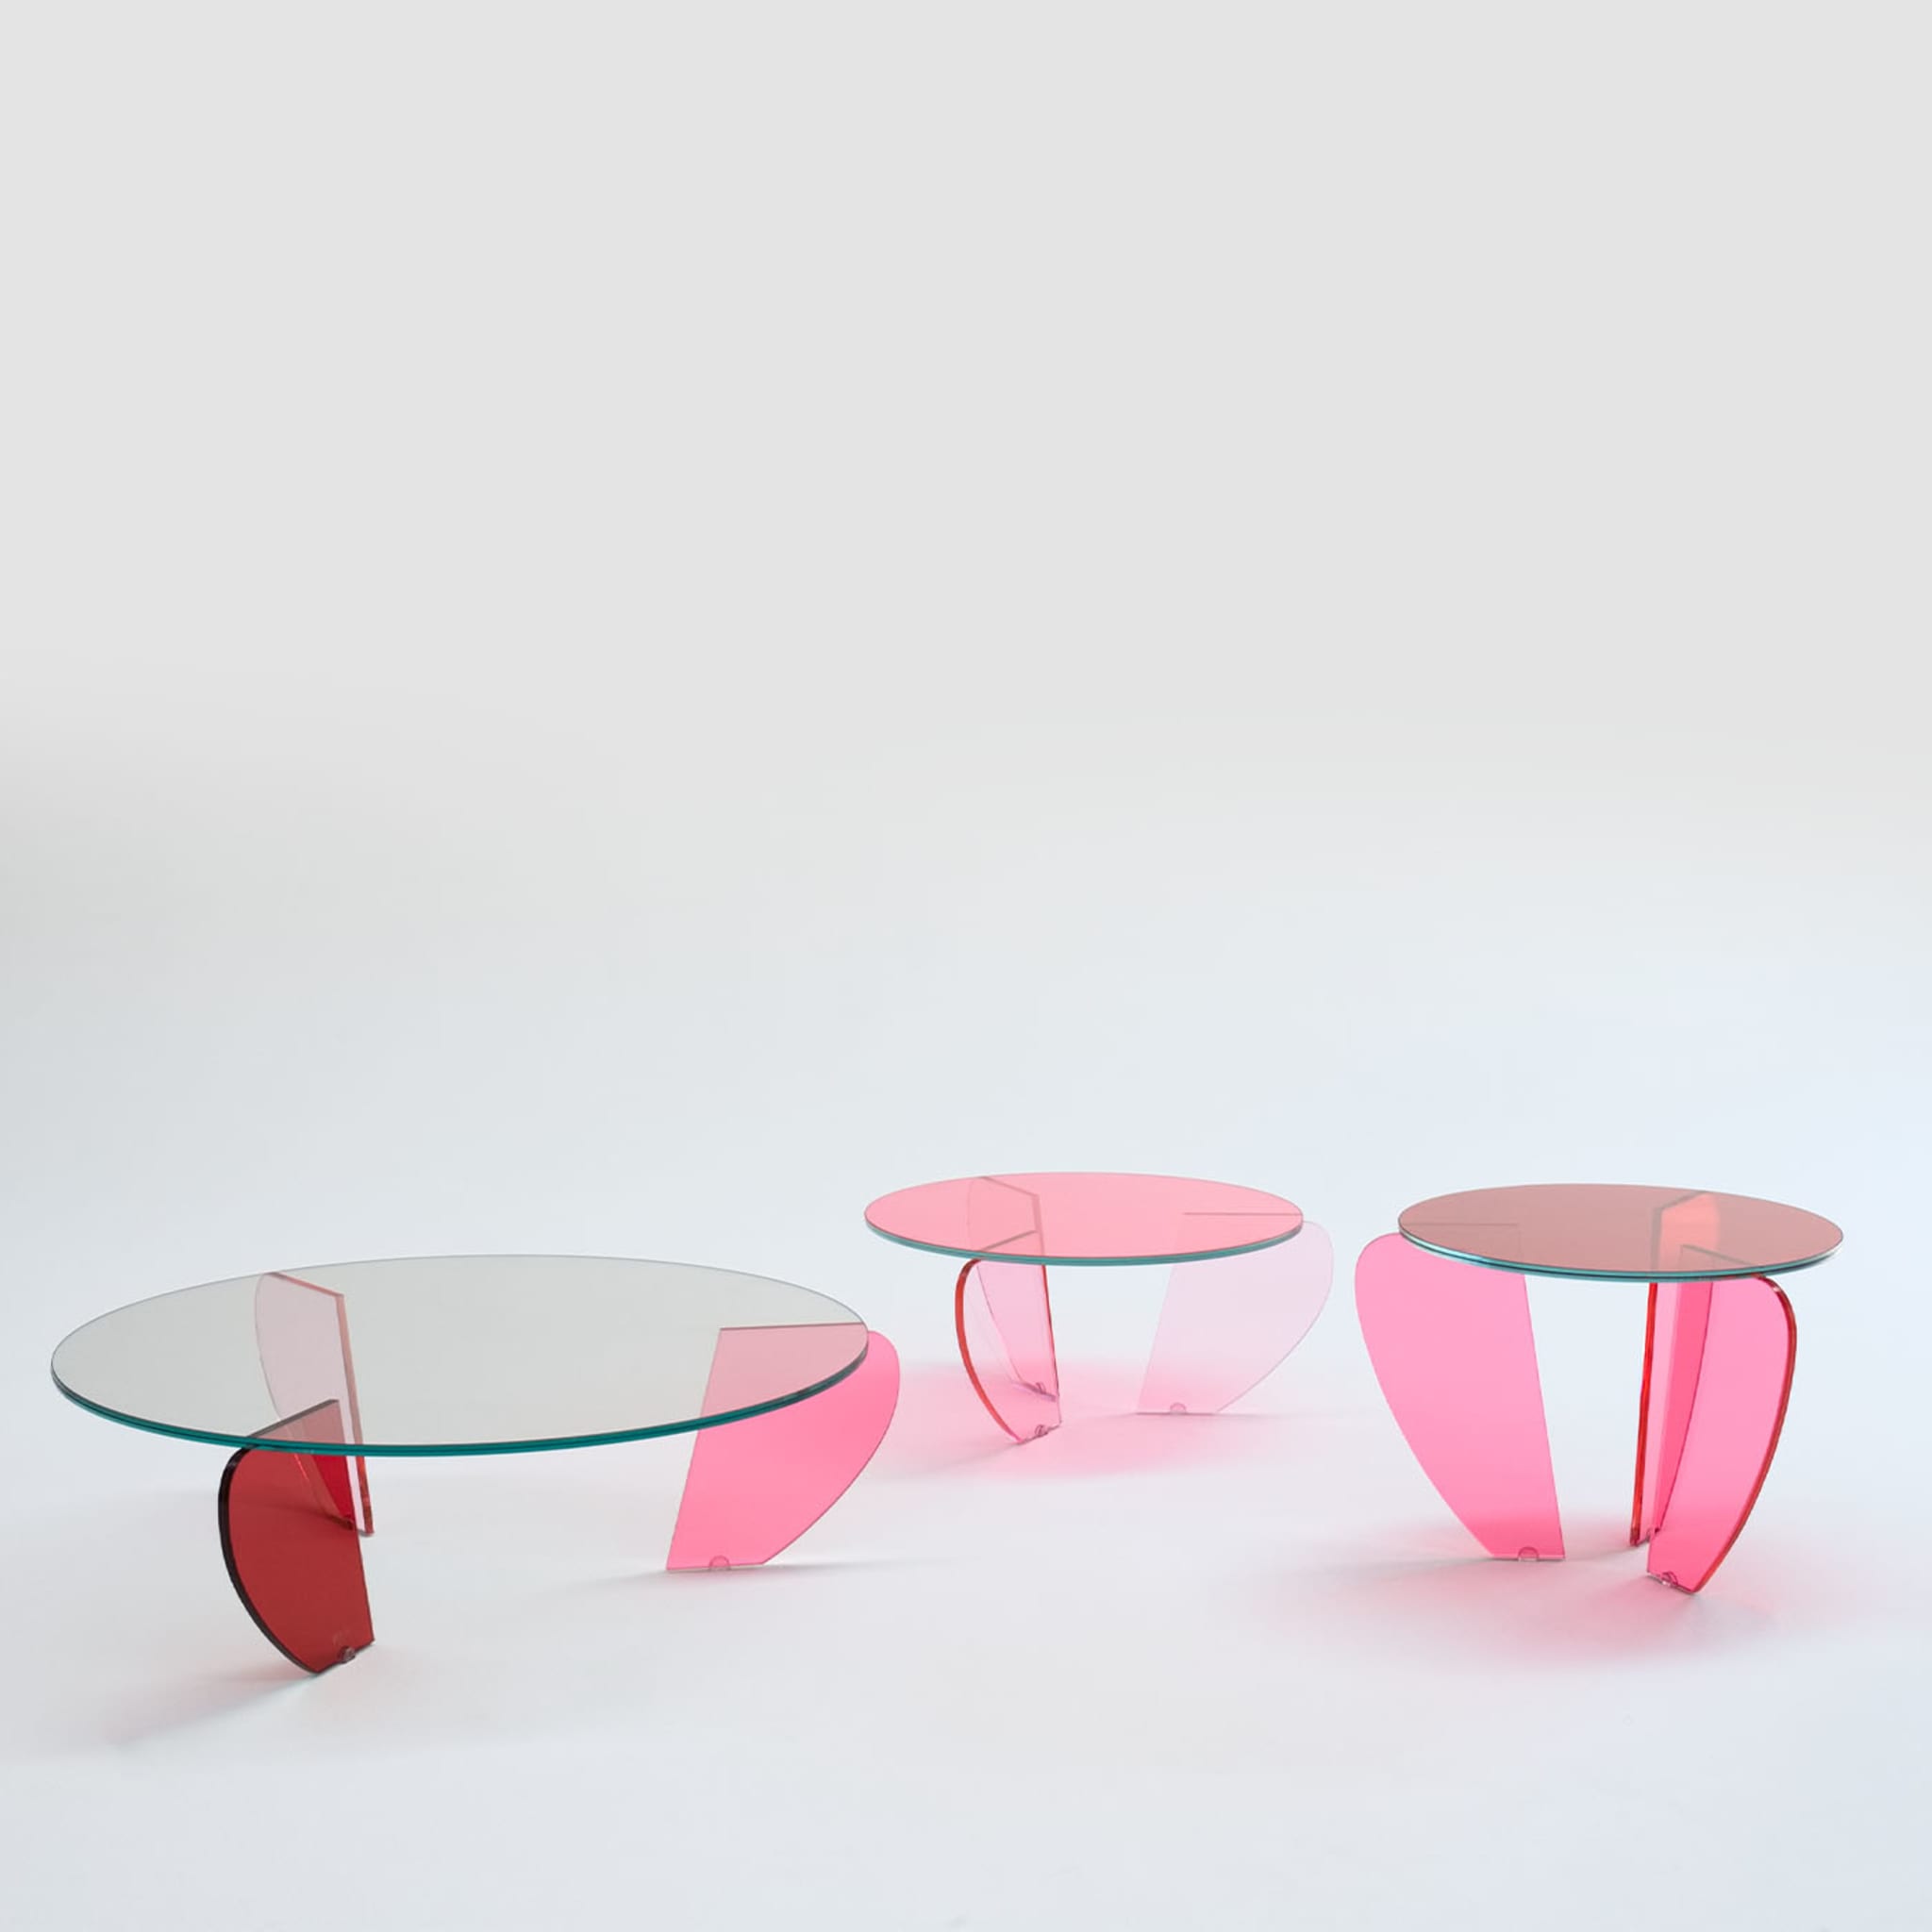 Teo Medium Colored Coffee Table by Andrea Petterini - Alternative view 3